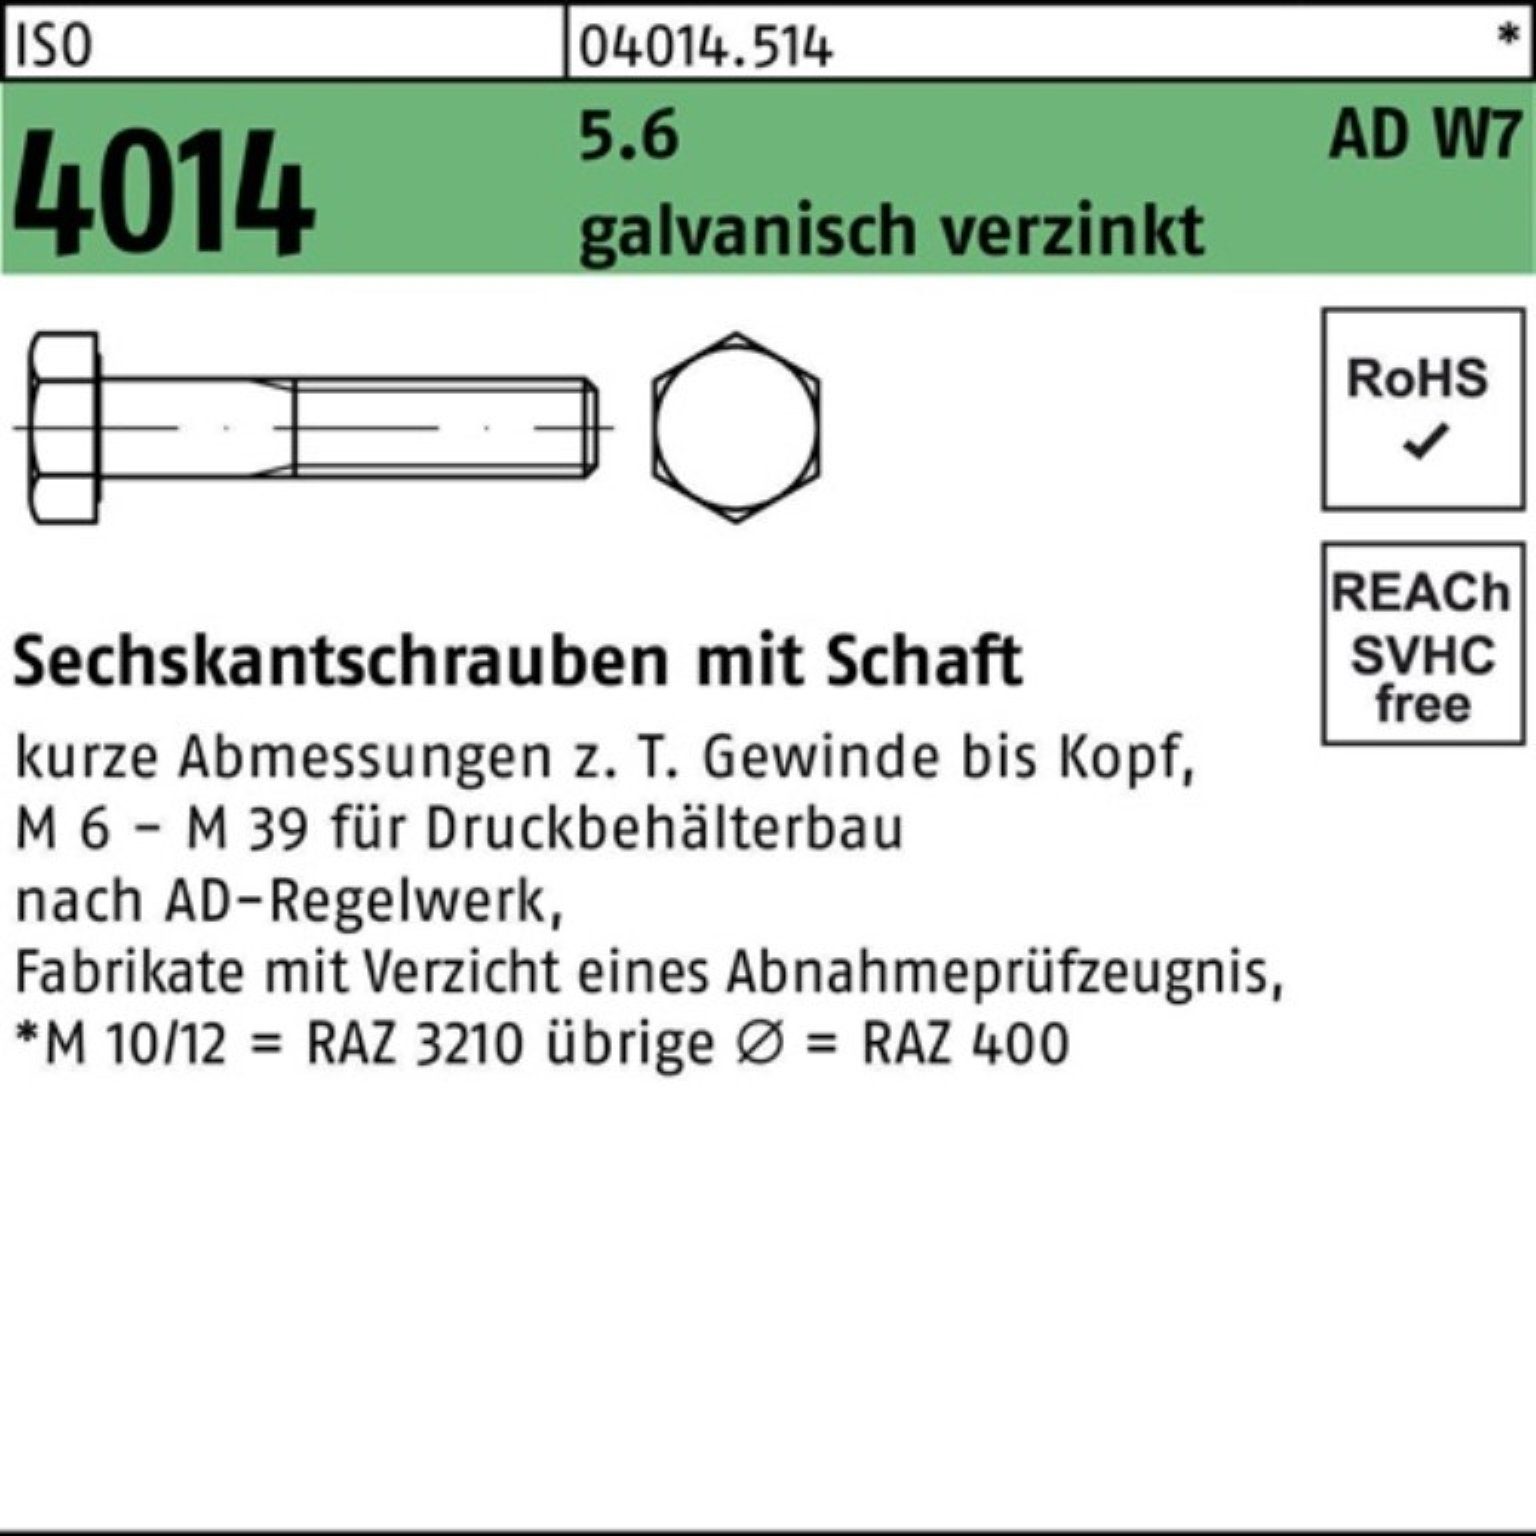 Schaft 100er 4014 Bufab galv.verz 140 W7 Sechskantschraube M30x Pack 5.6 Sechskantschraube ISO